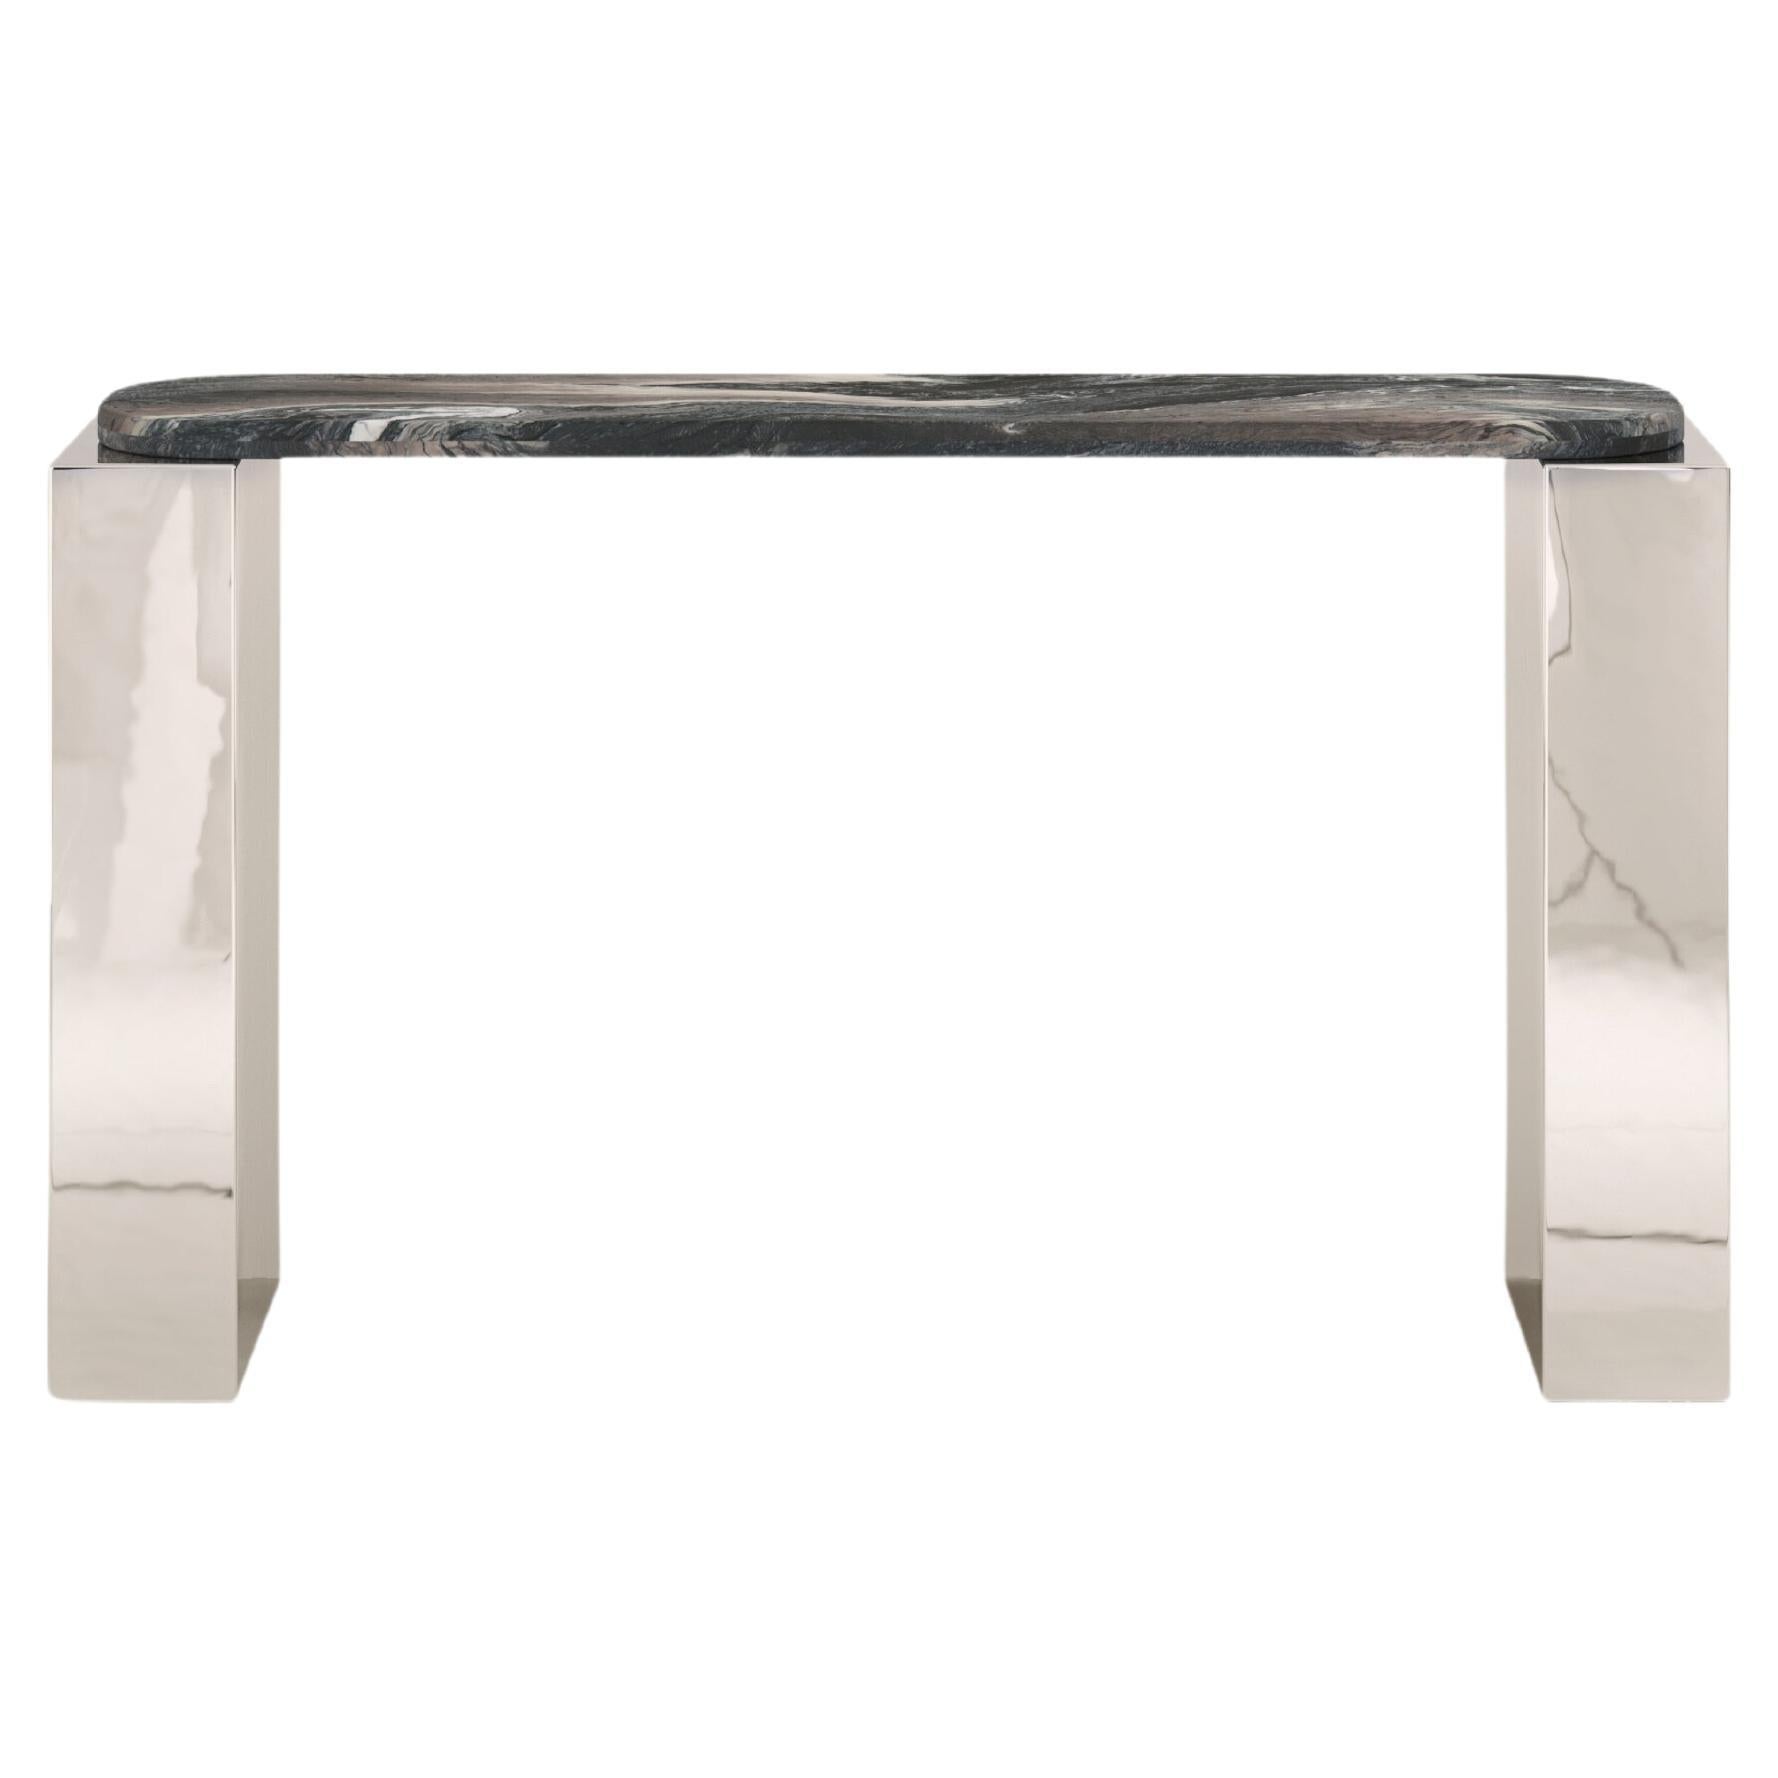 FORM(LA) Cubo Console Table 62”L x 17”W x 36”H Ondulato Marble & Chrome